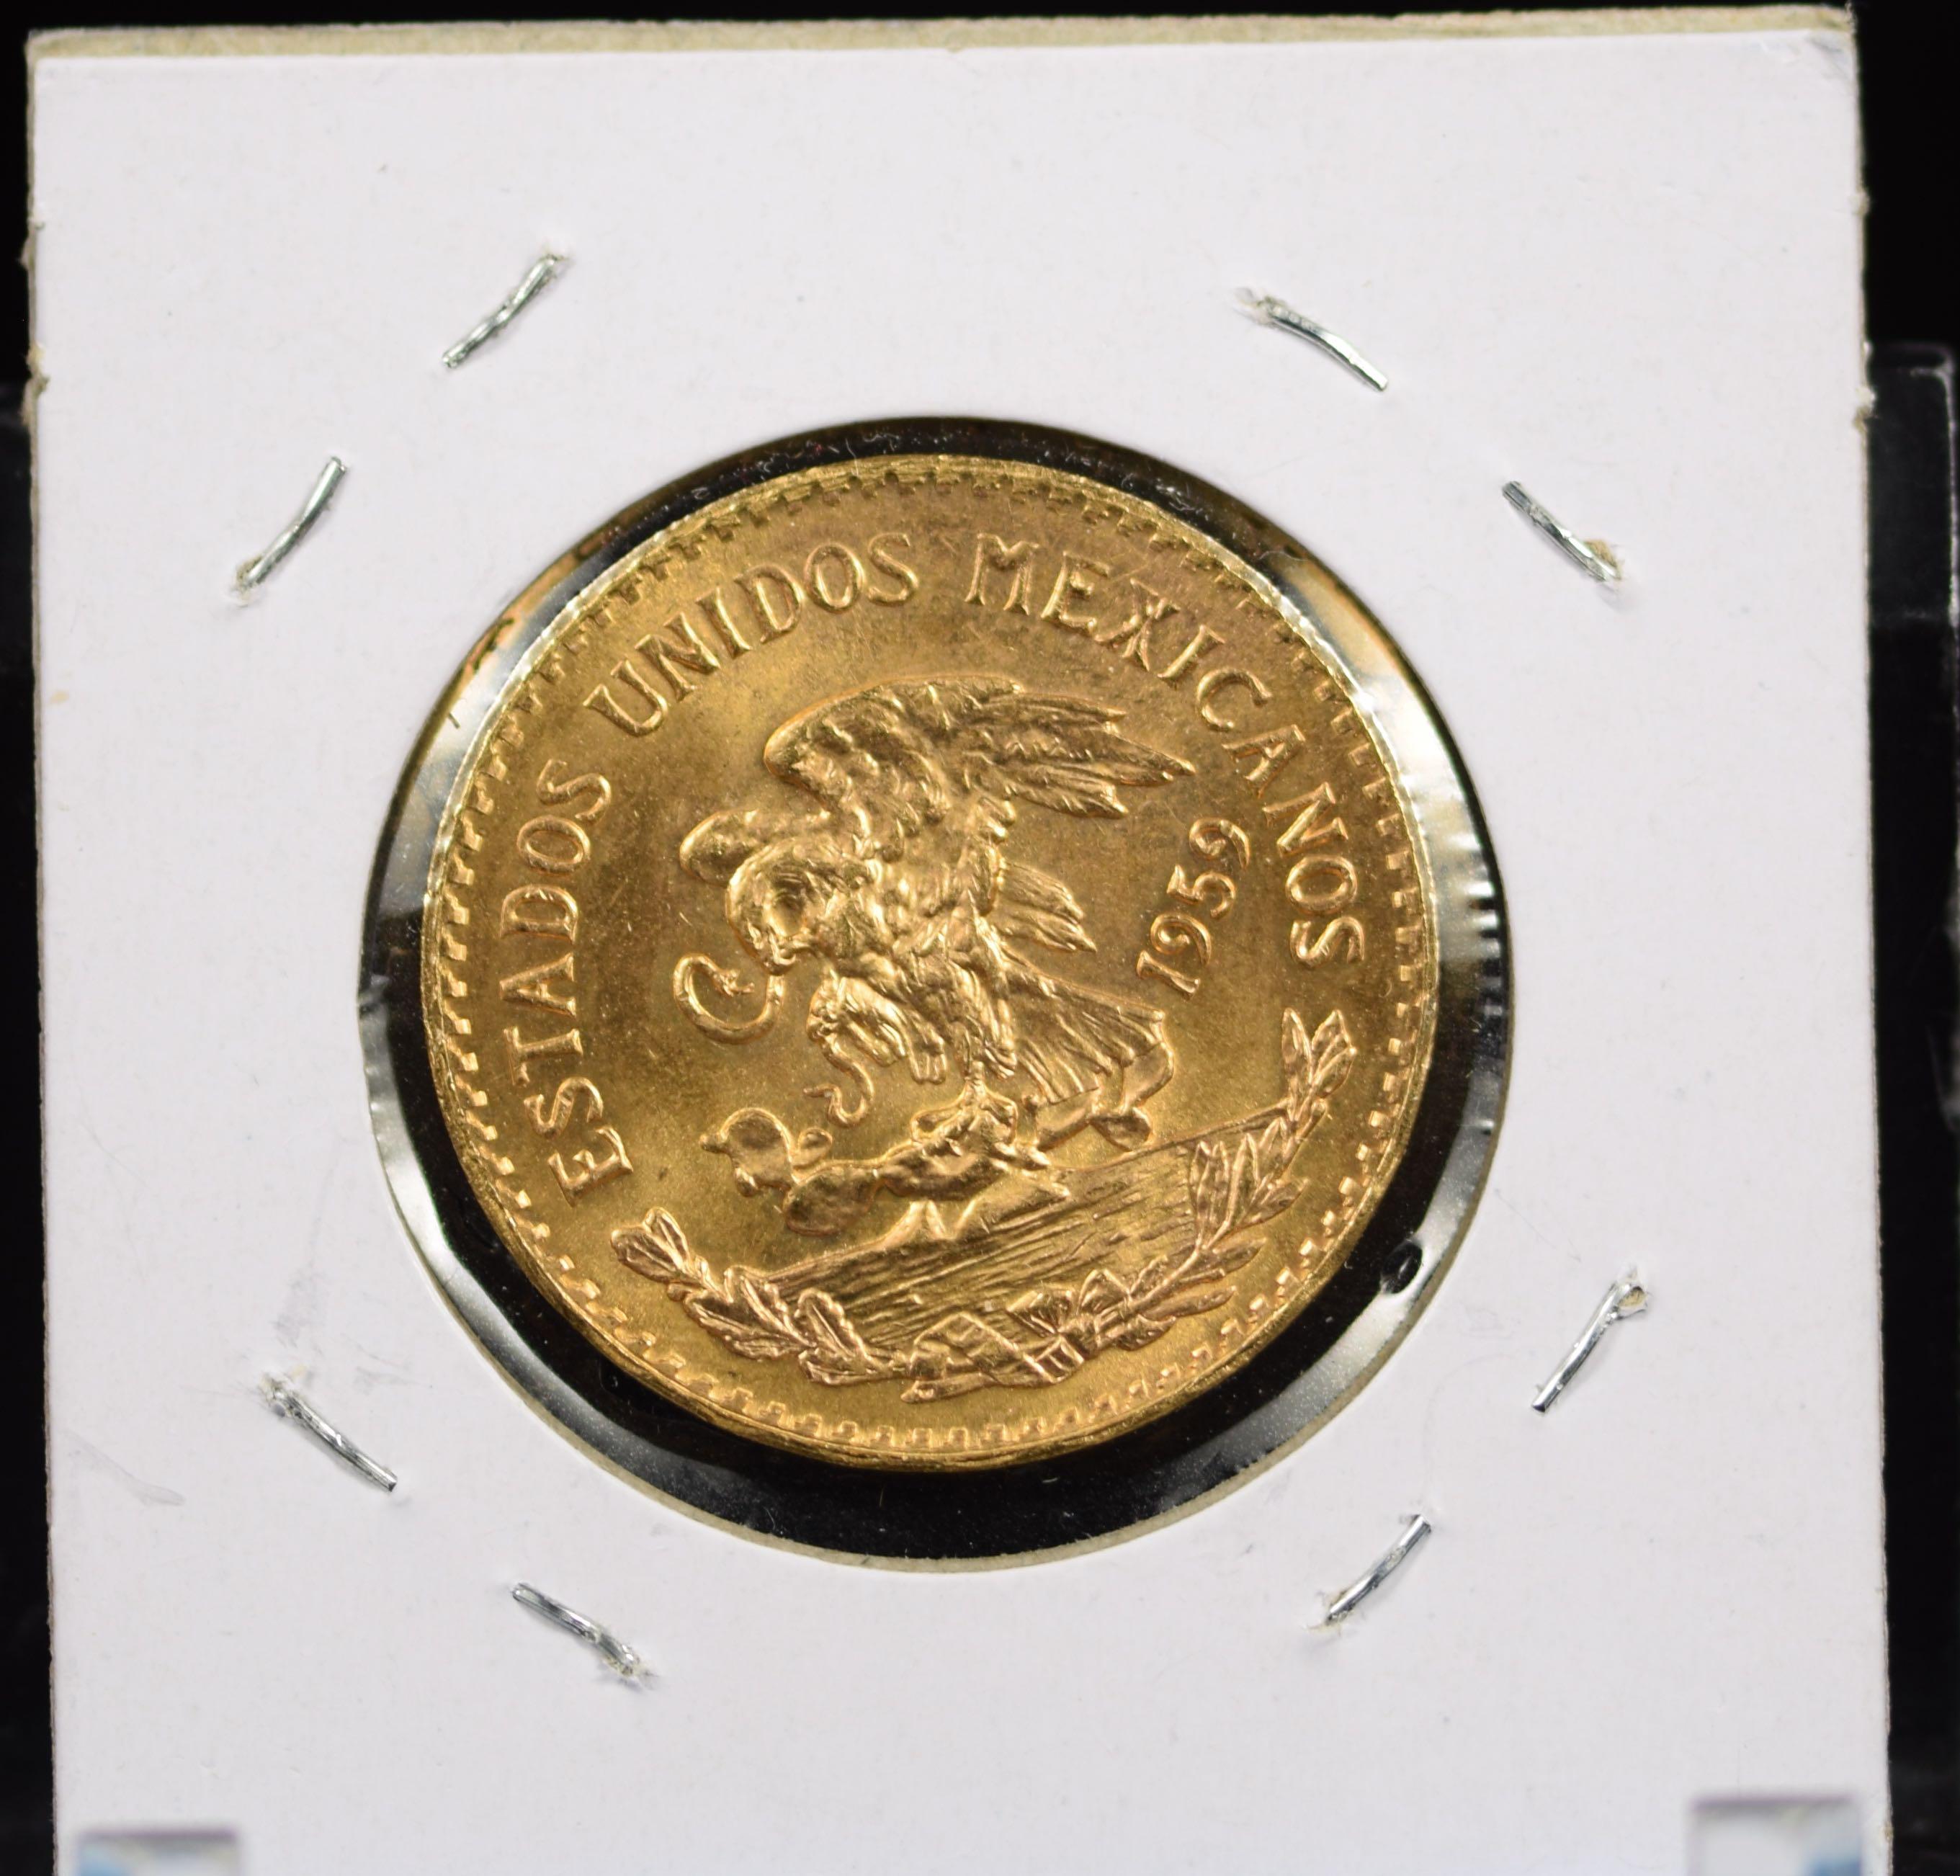 1959 Gold 20 Veinte Peso MS64 Nice